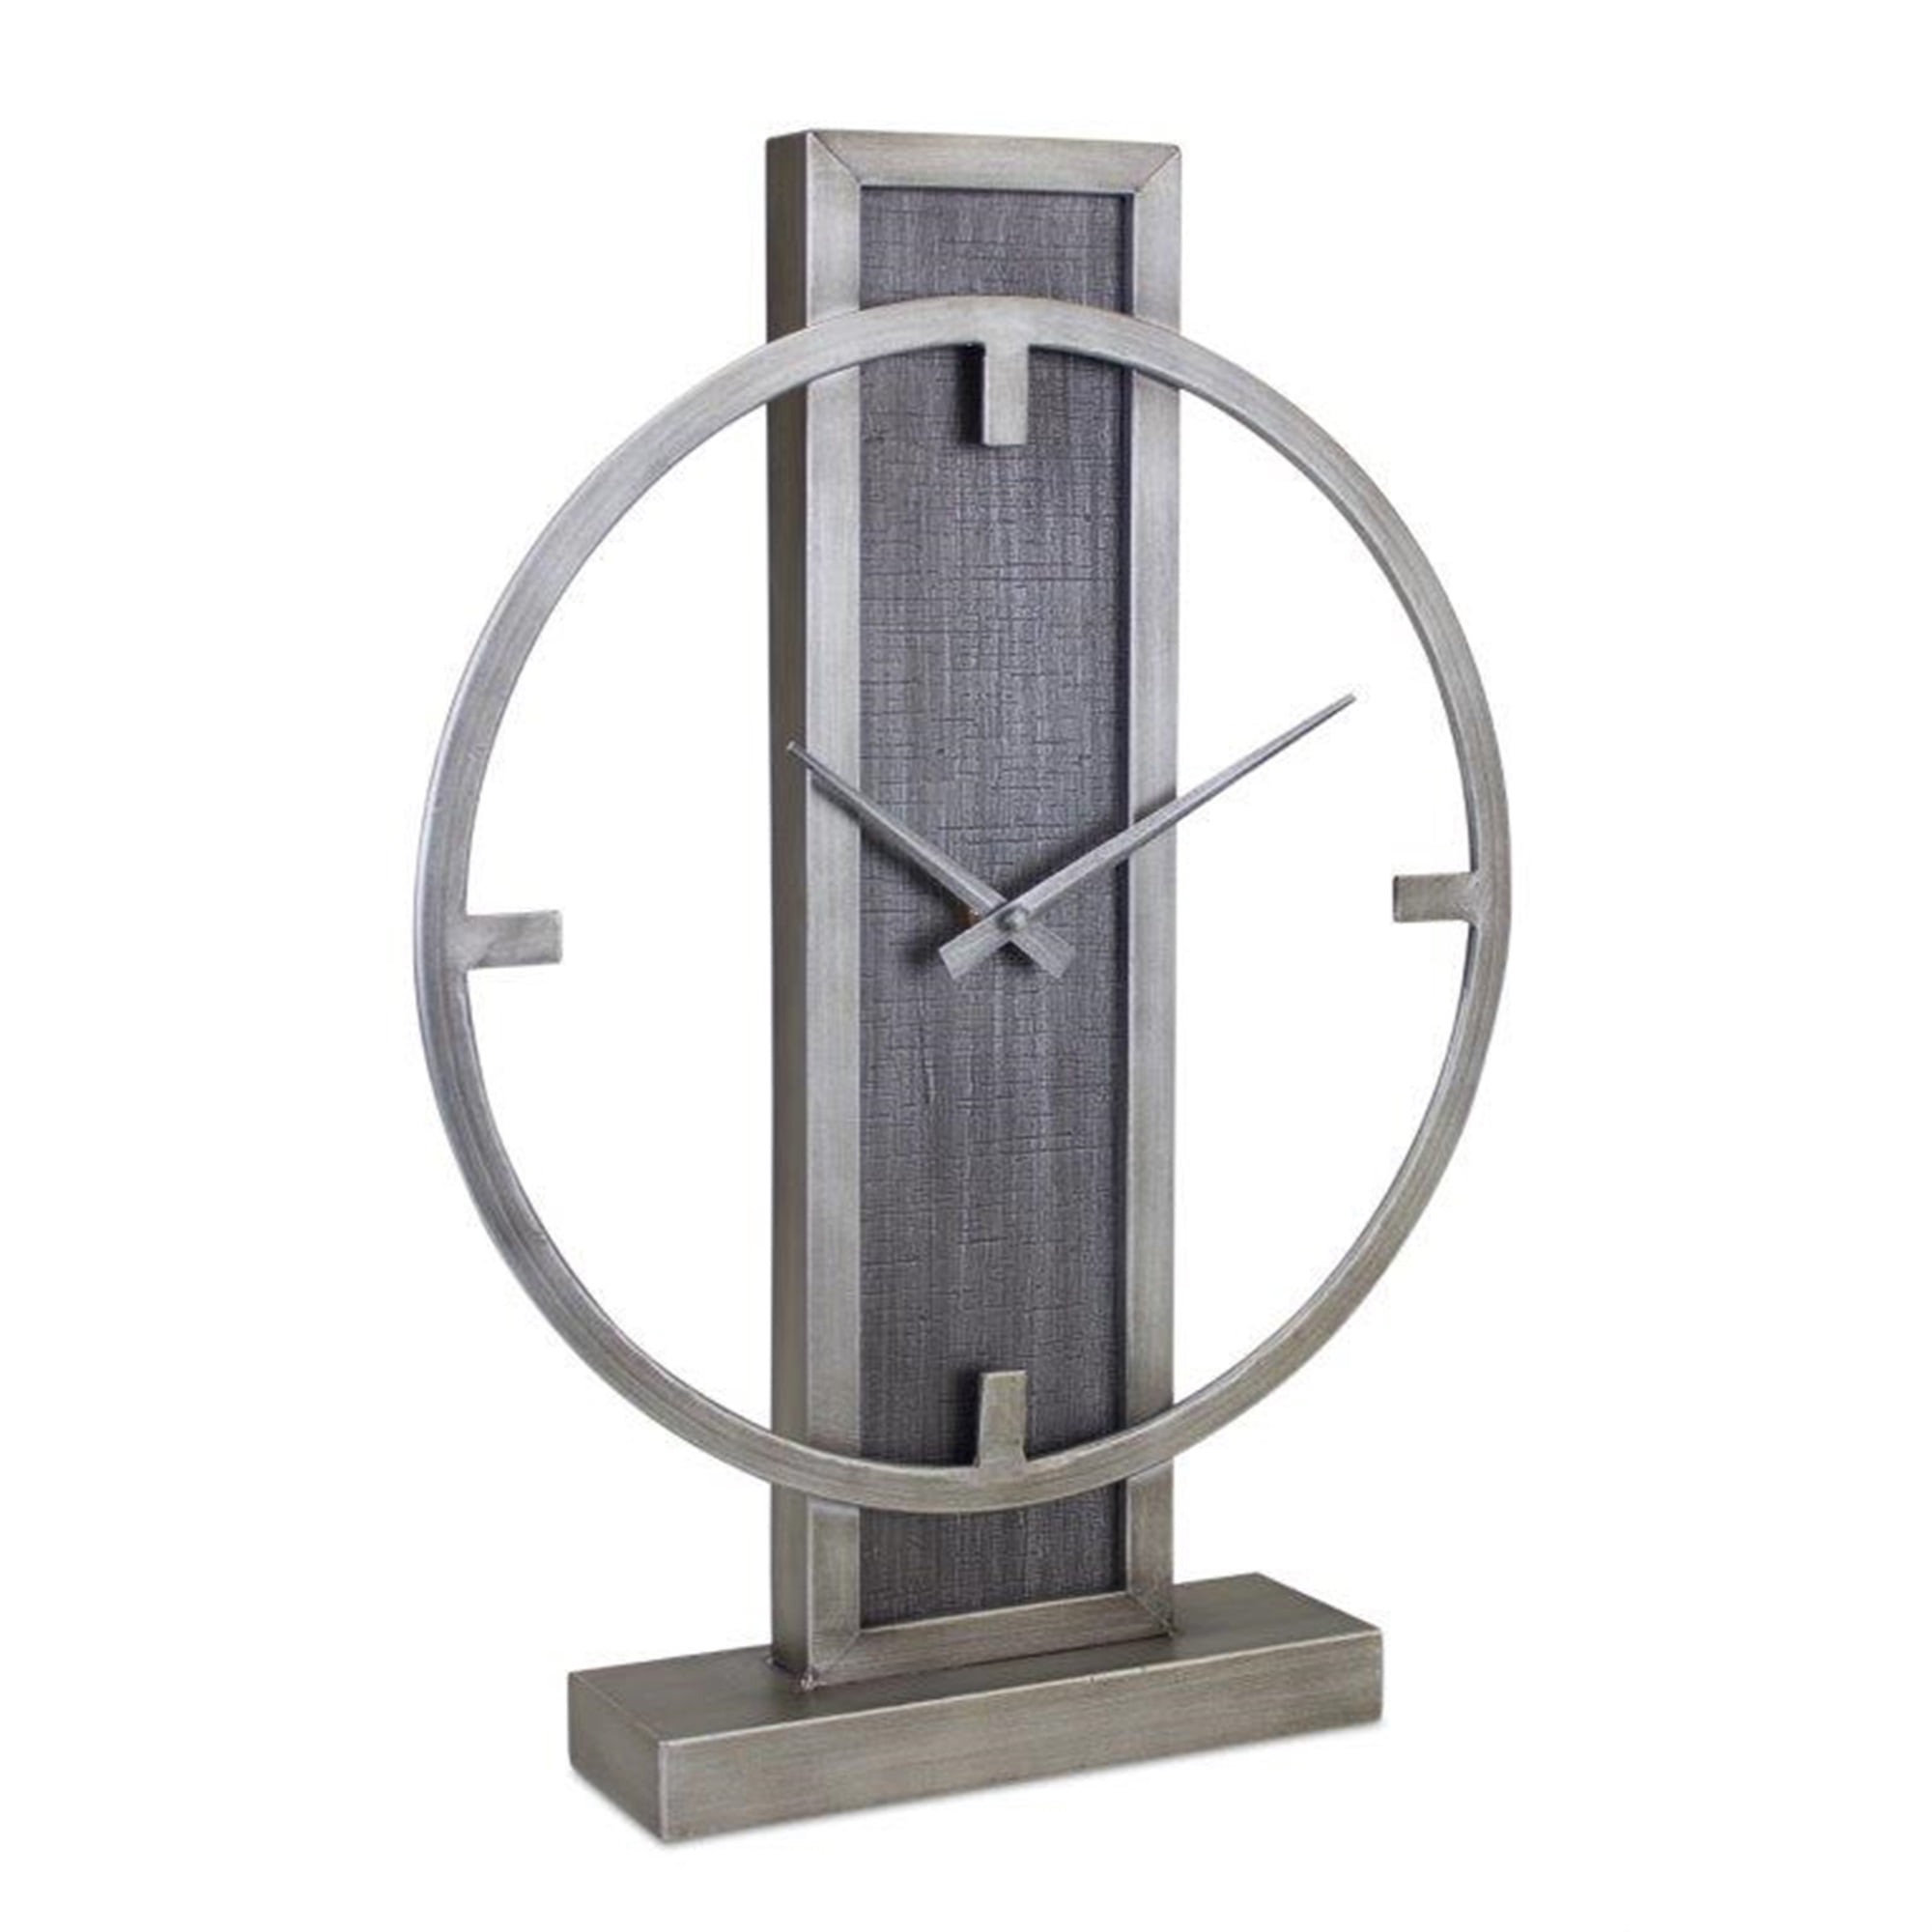 Clock 14.75"L x 19.75"H Iron/Wood